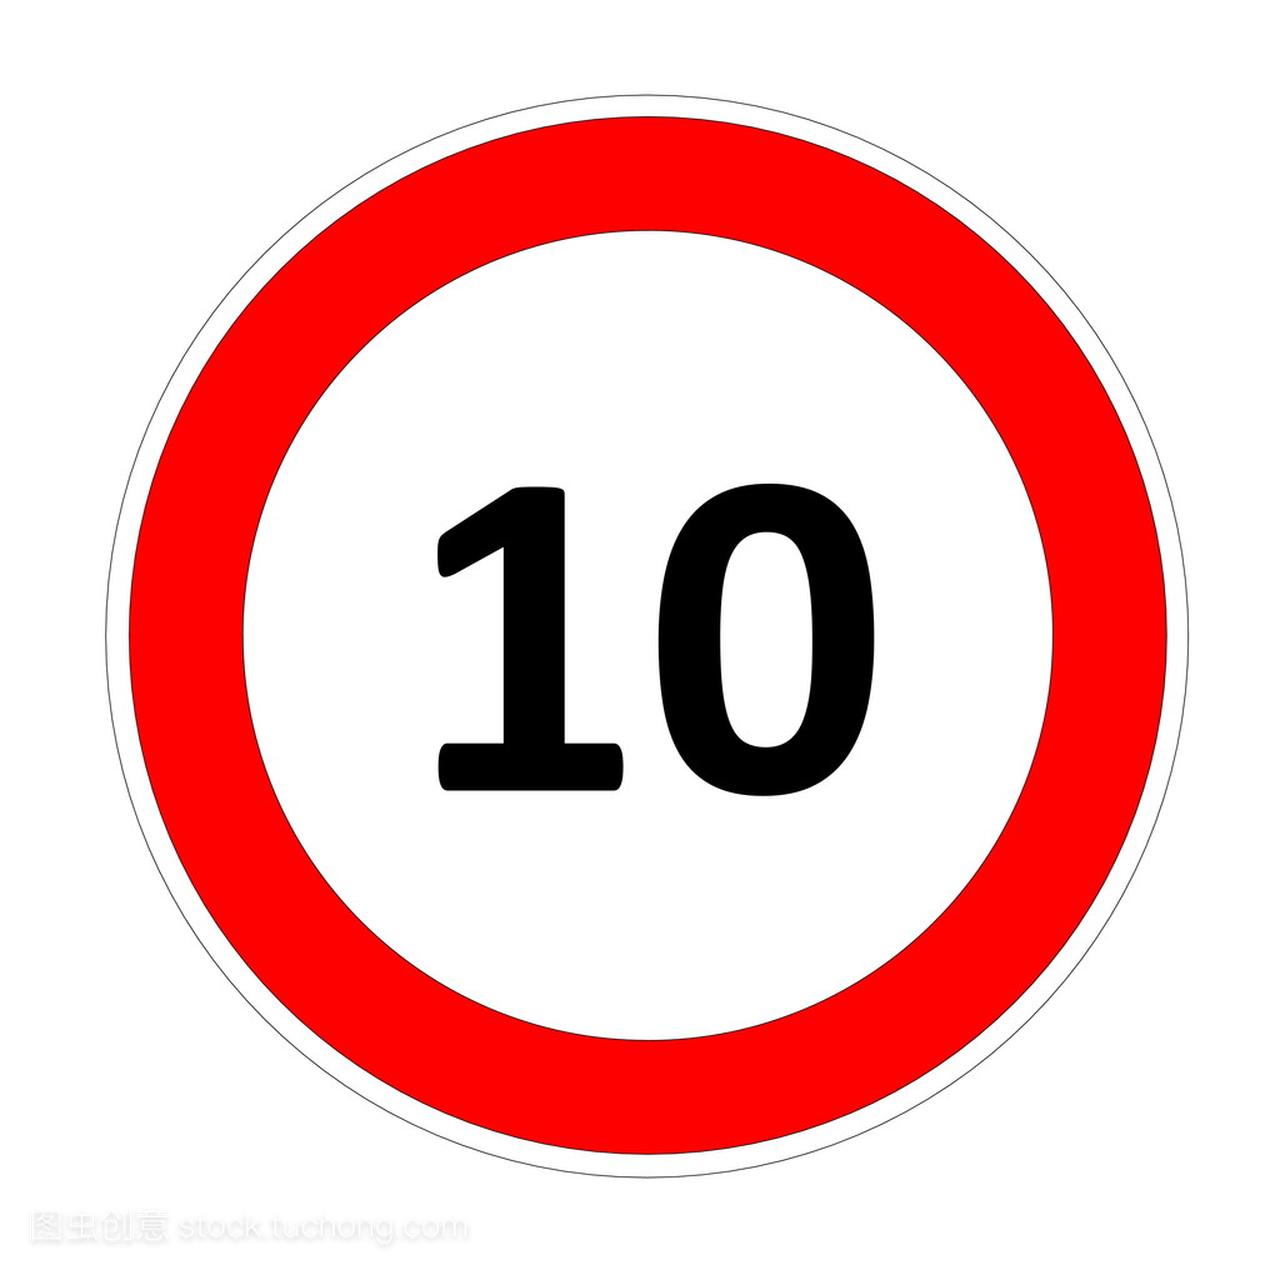 10 的速度限制标志